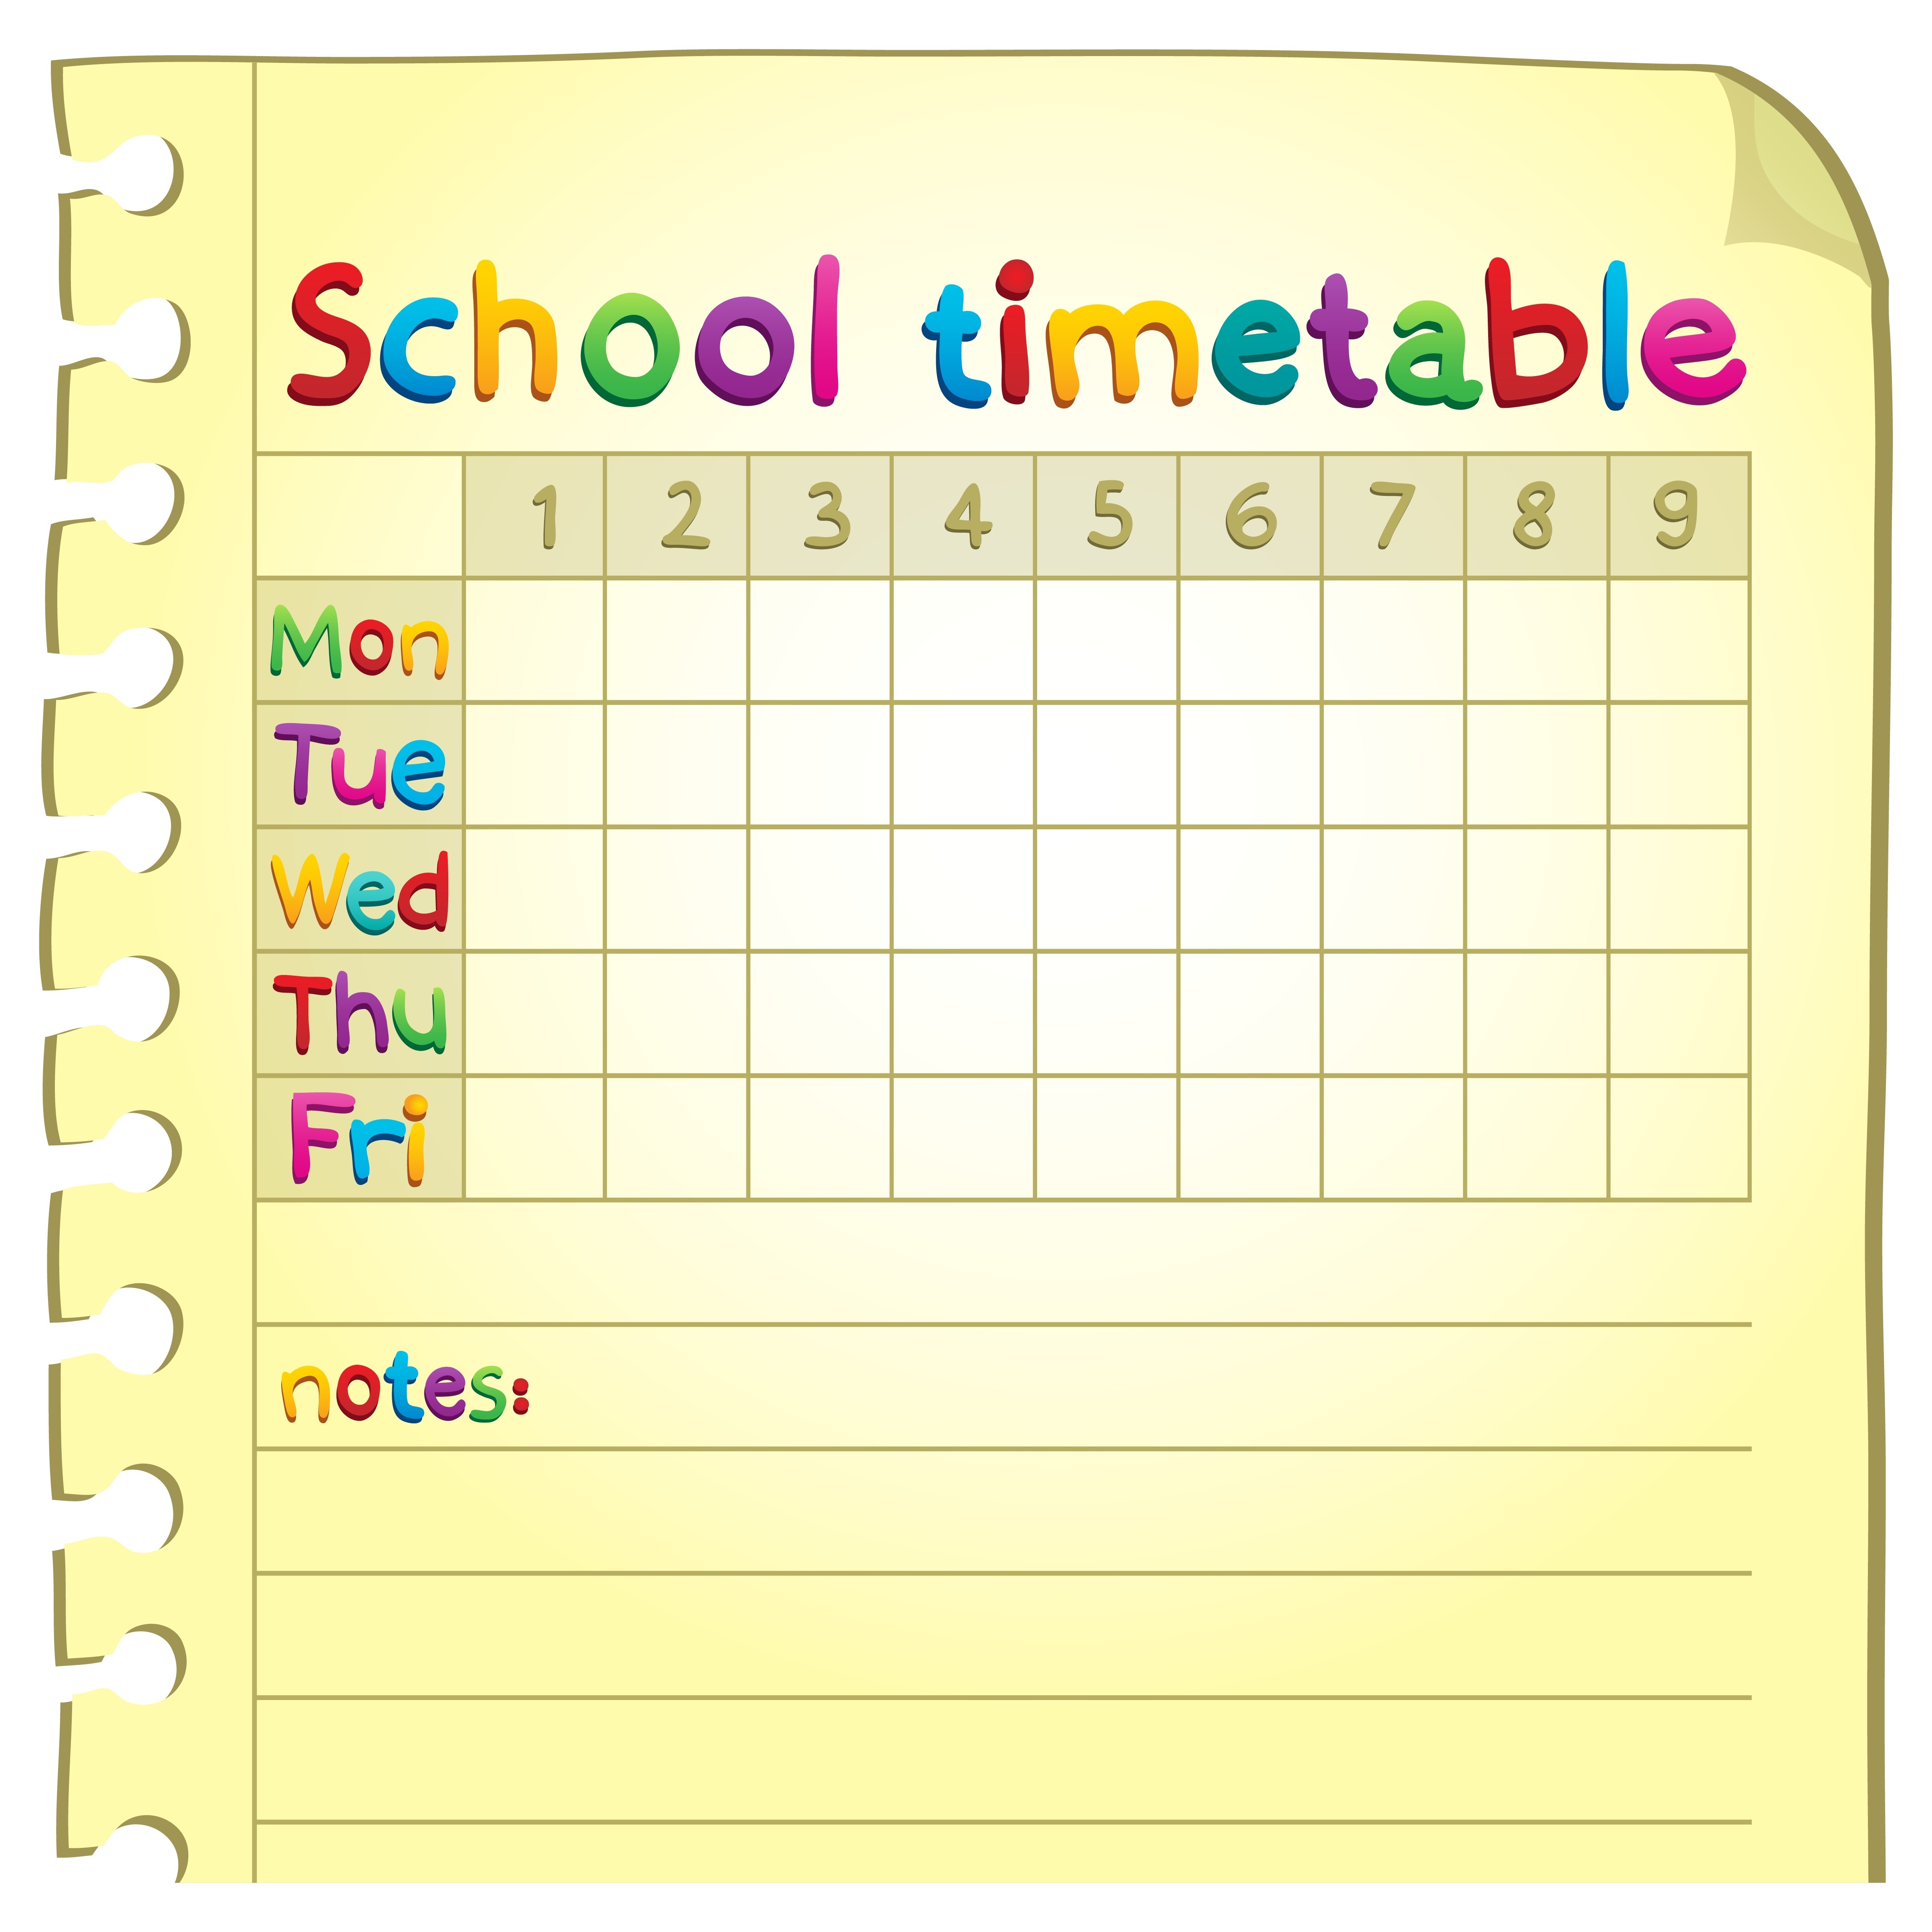 21319178 - school timetable topic